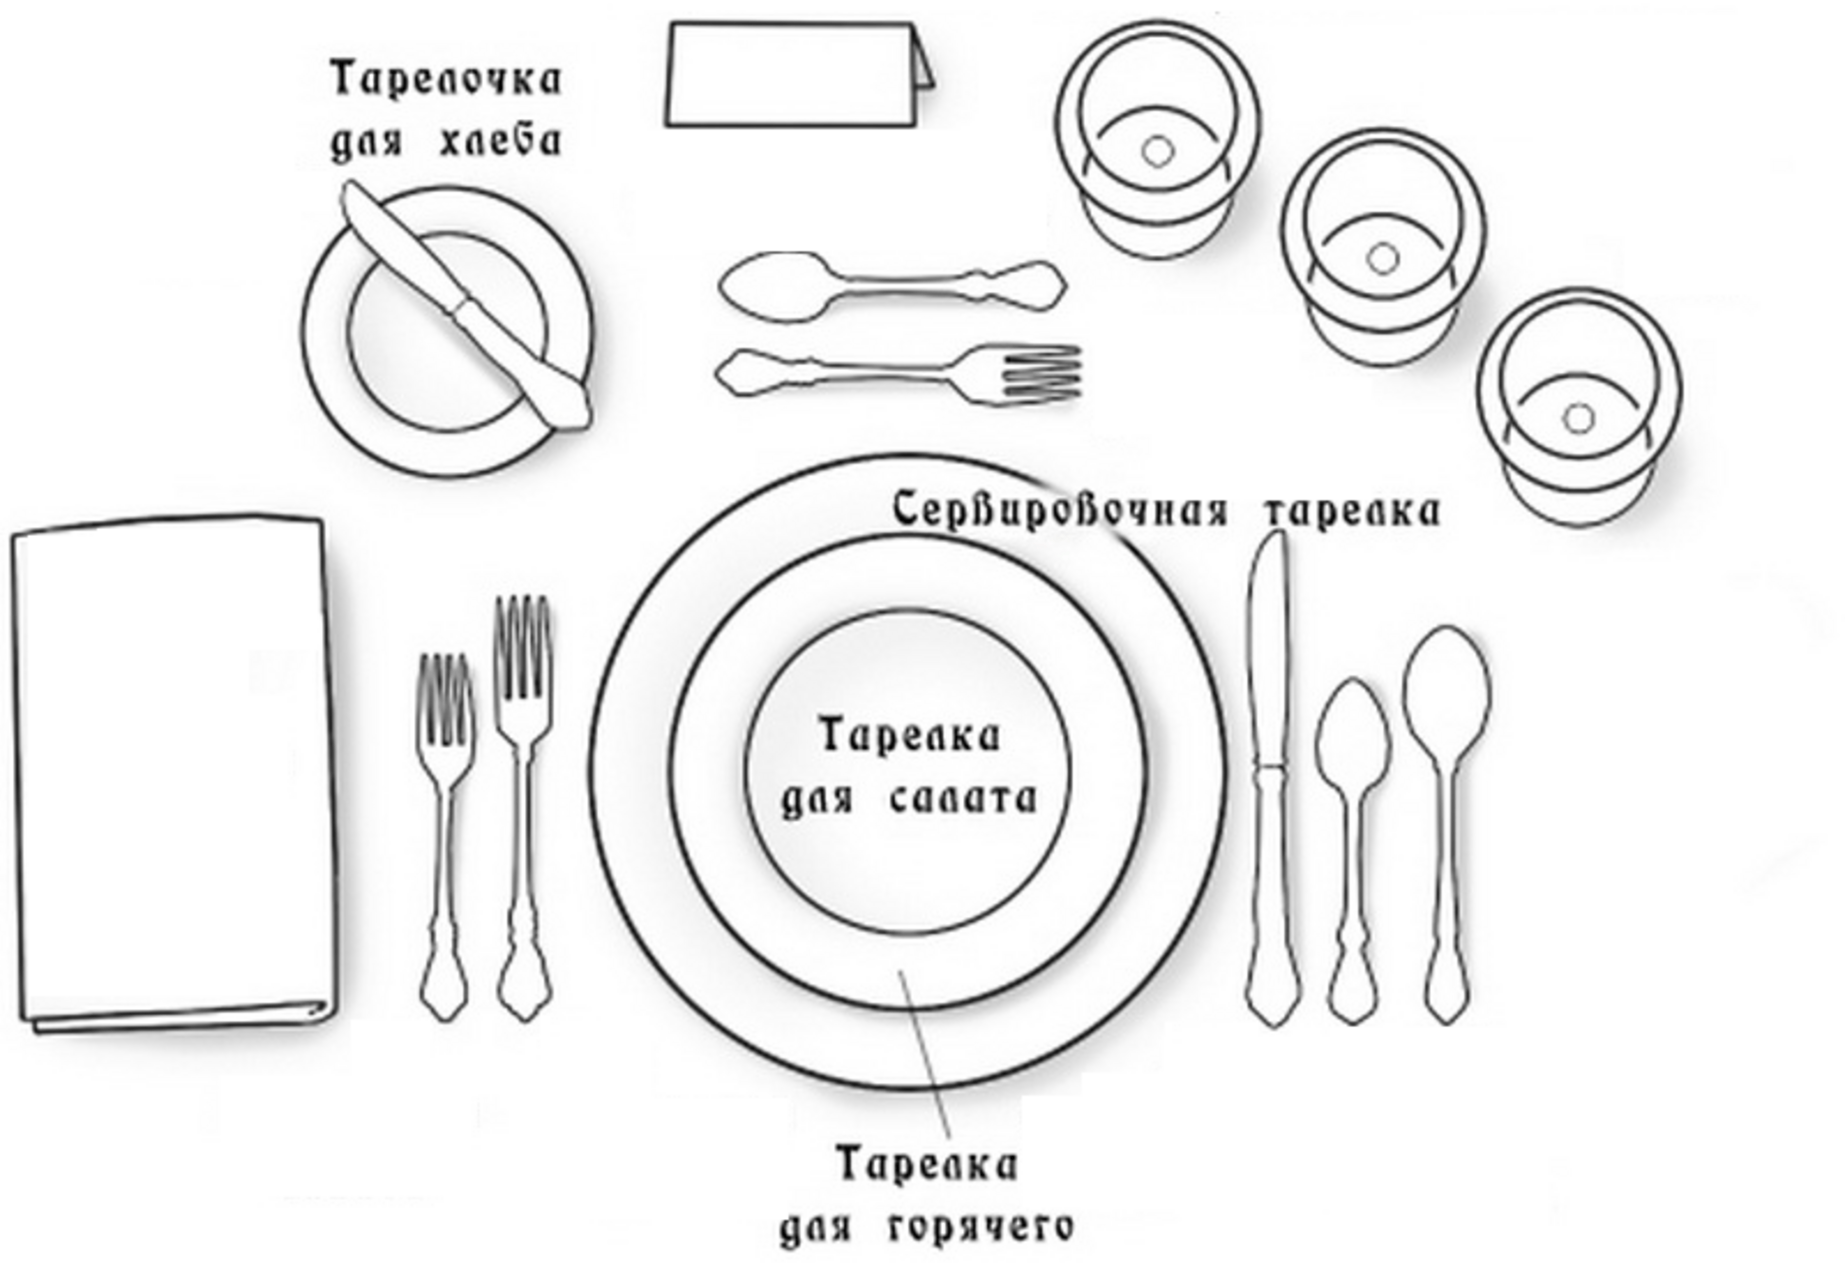 Правила сервировки стола по этикету, выбор посуды и декора 35 - ДиванеТТо